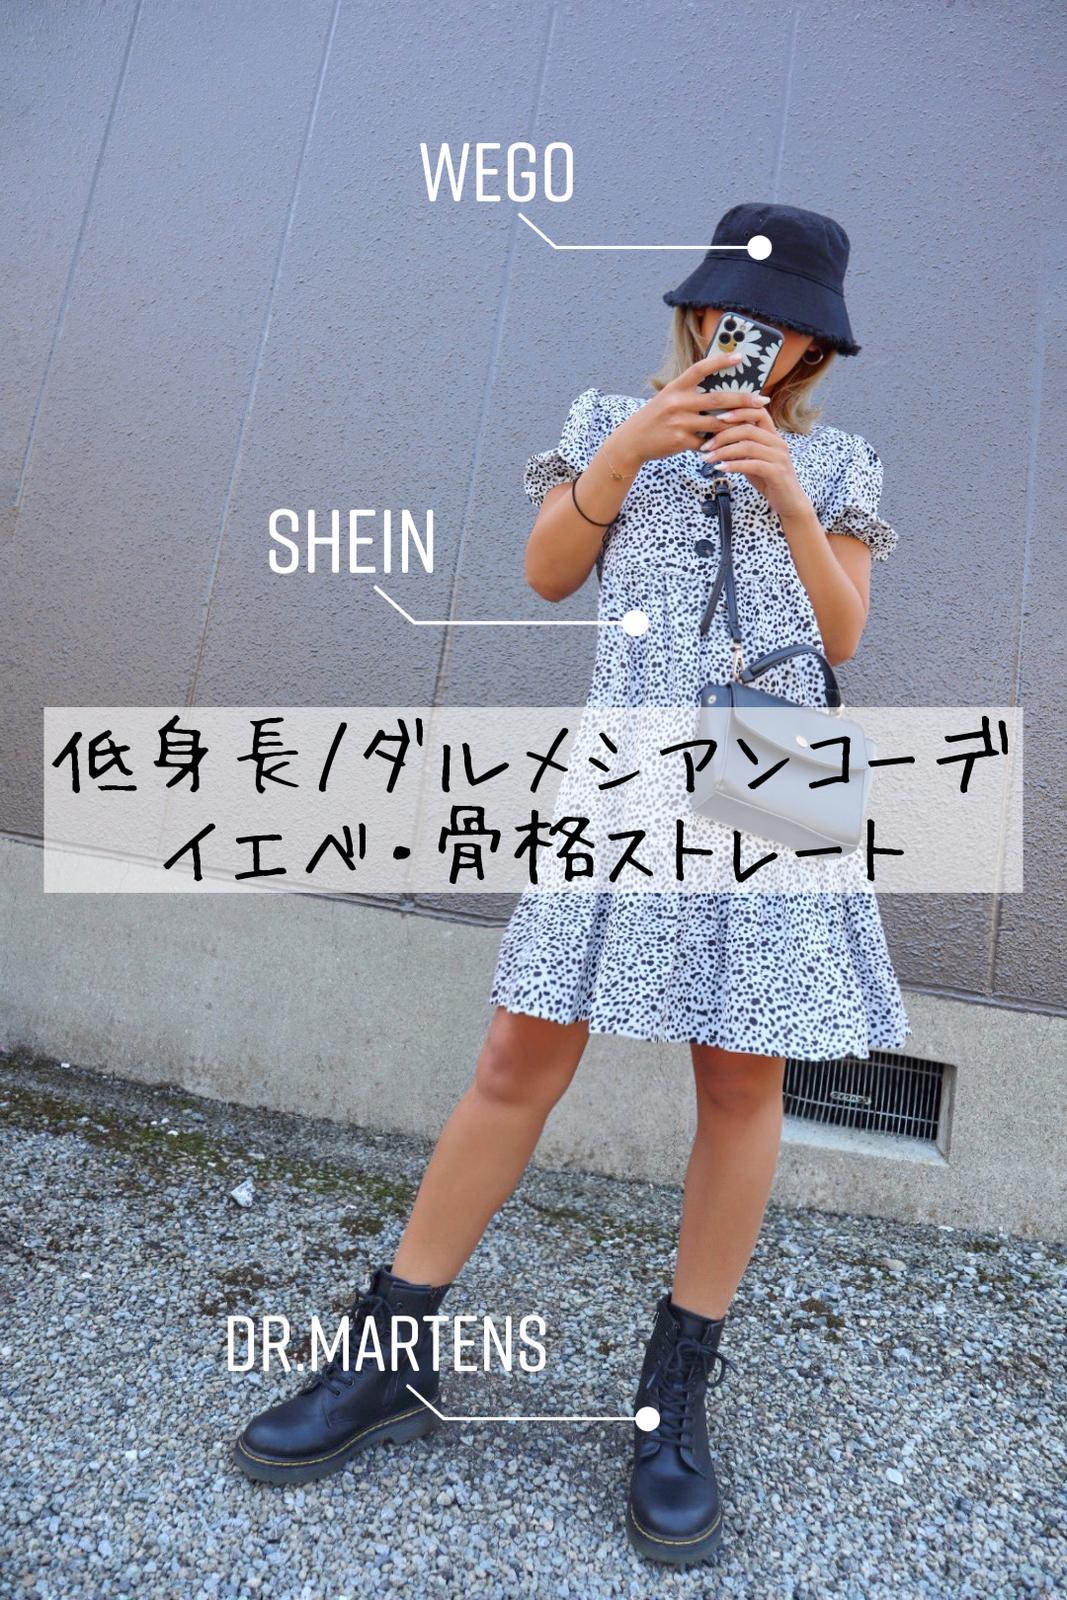 Shein 購入品 ダルメシアンワンピースコーデ Eminanaが投稿したフォトブック Lemon8